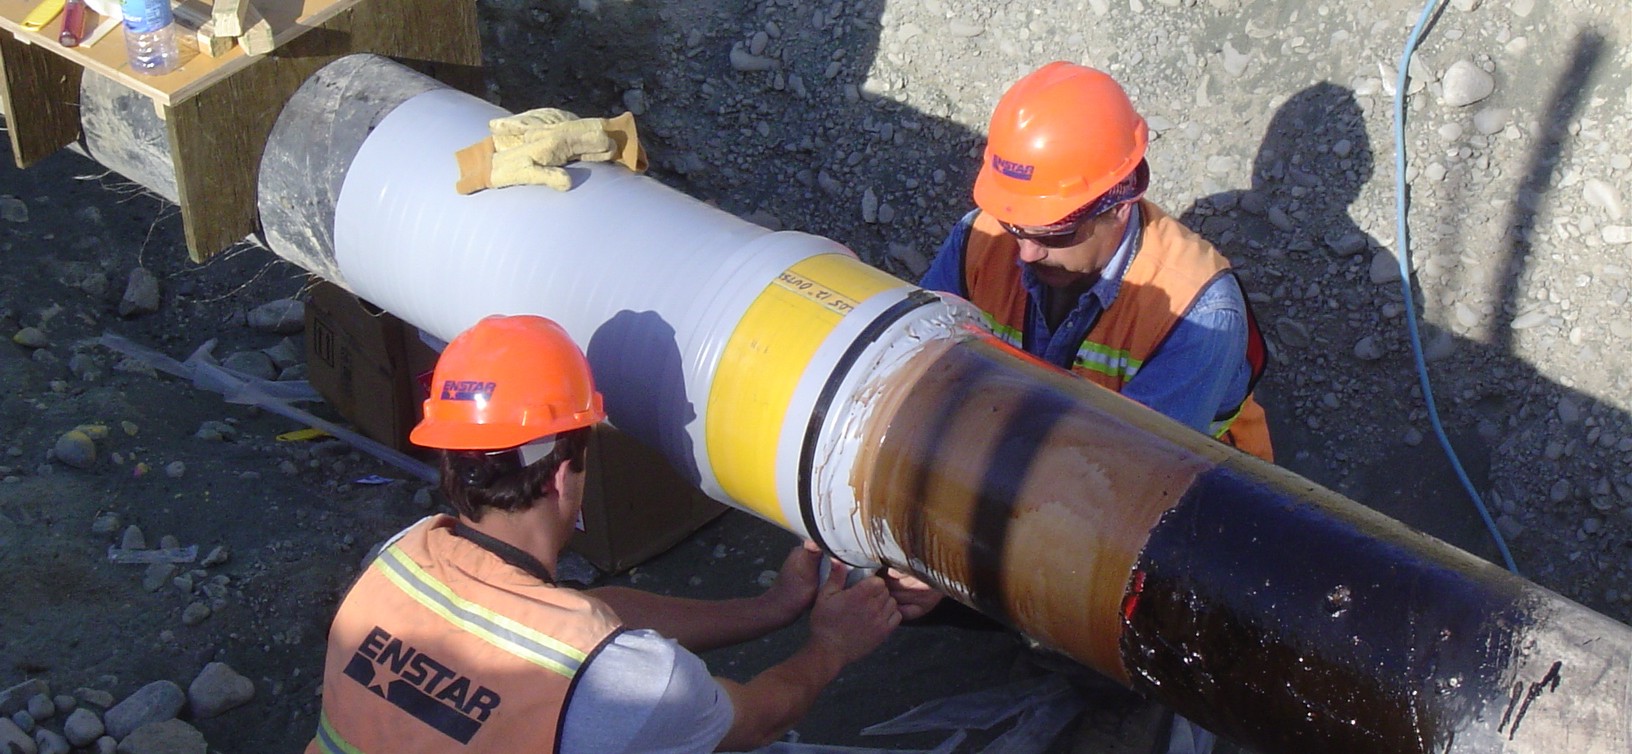 ENSTAR Employees working on pipeline